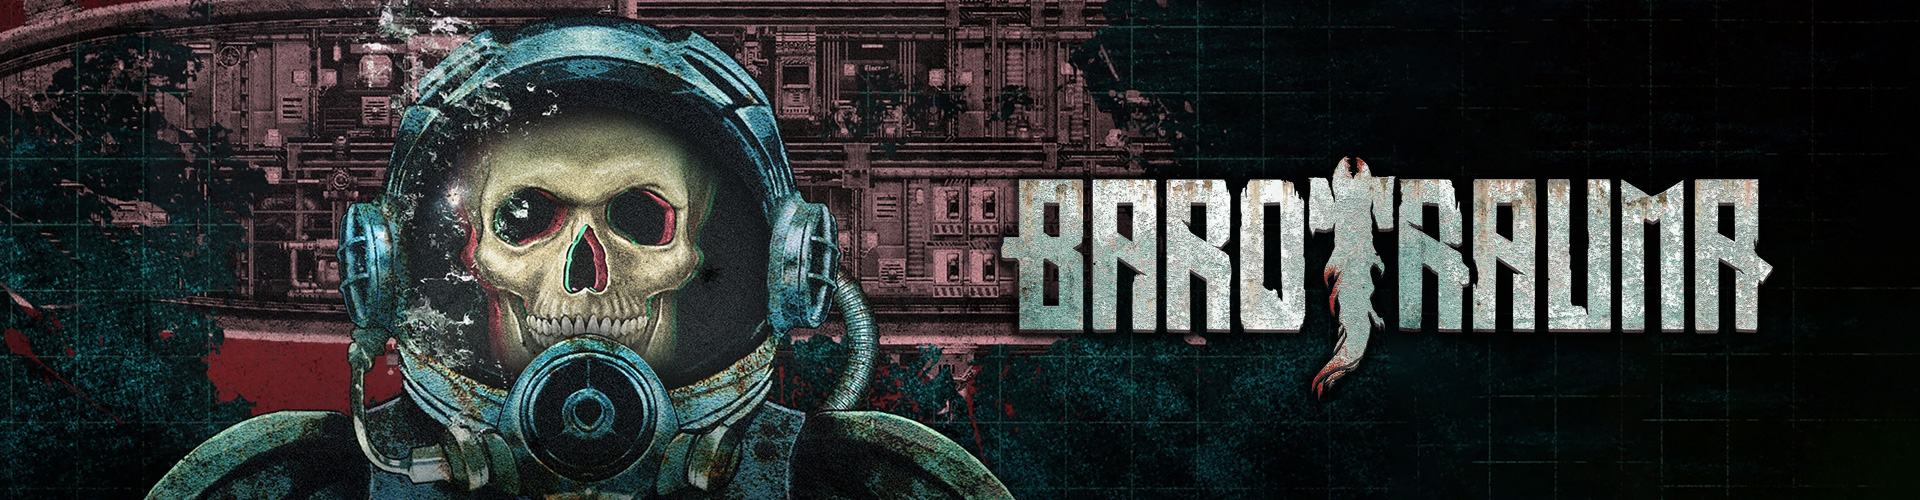 H4 Barotrauma: un juego de terror multijugador en submarino